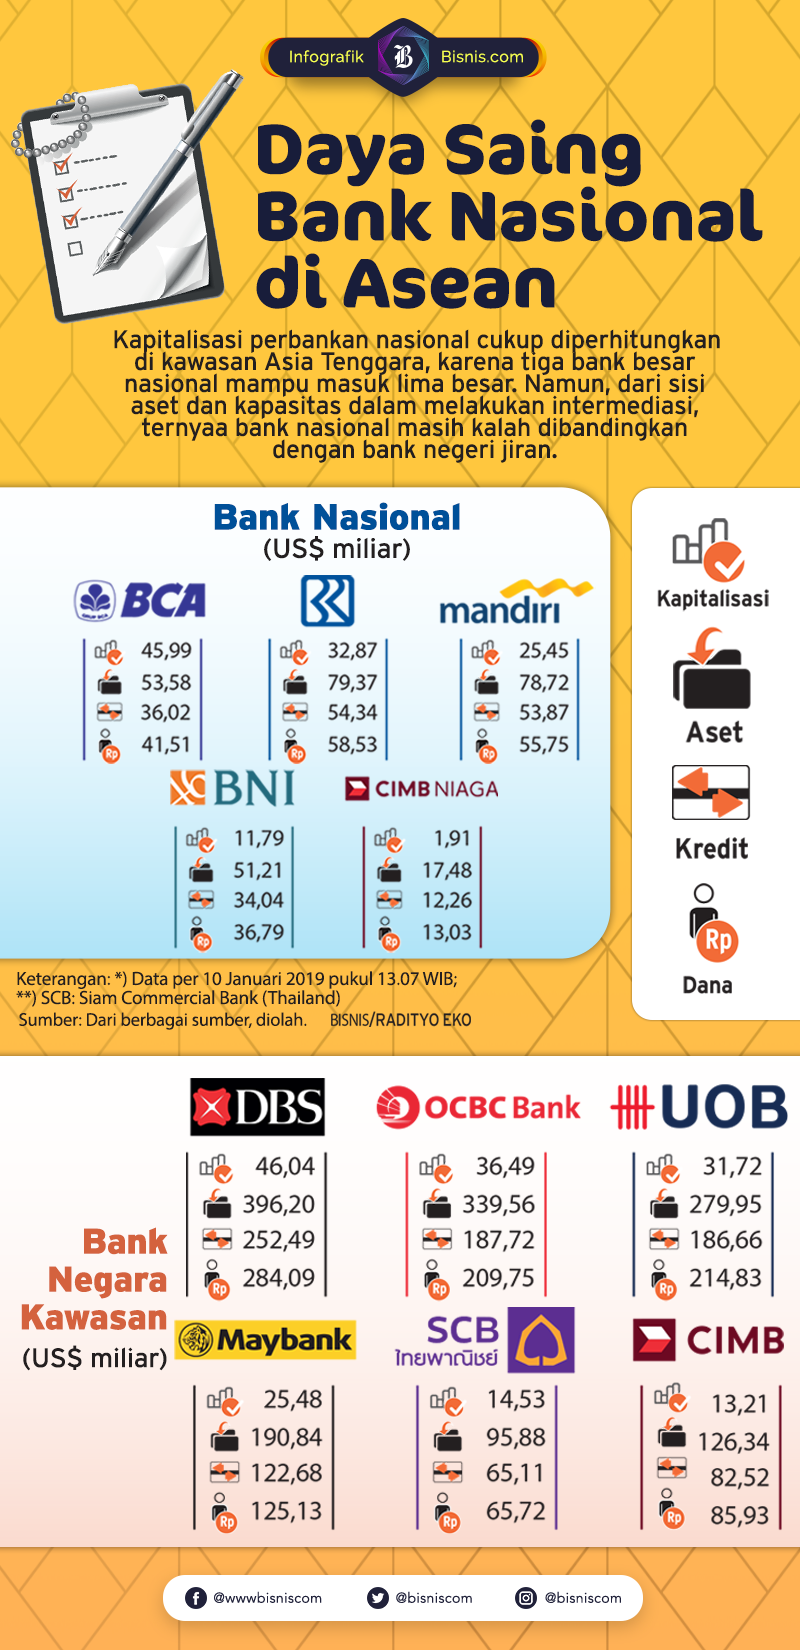 Pengumpulan Aset Perbankan Nasional Masih Tertinggal Jauh dengan Asia Tenggara